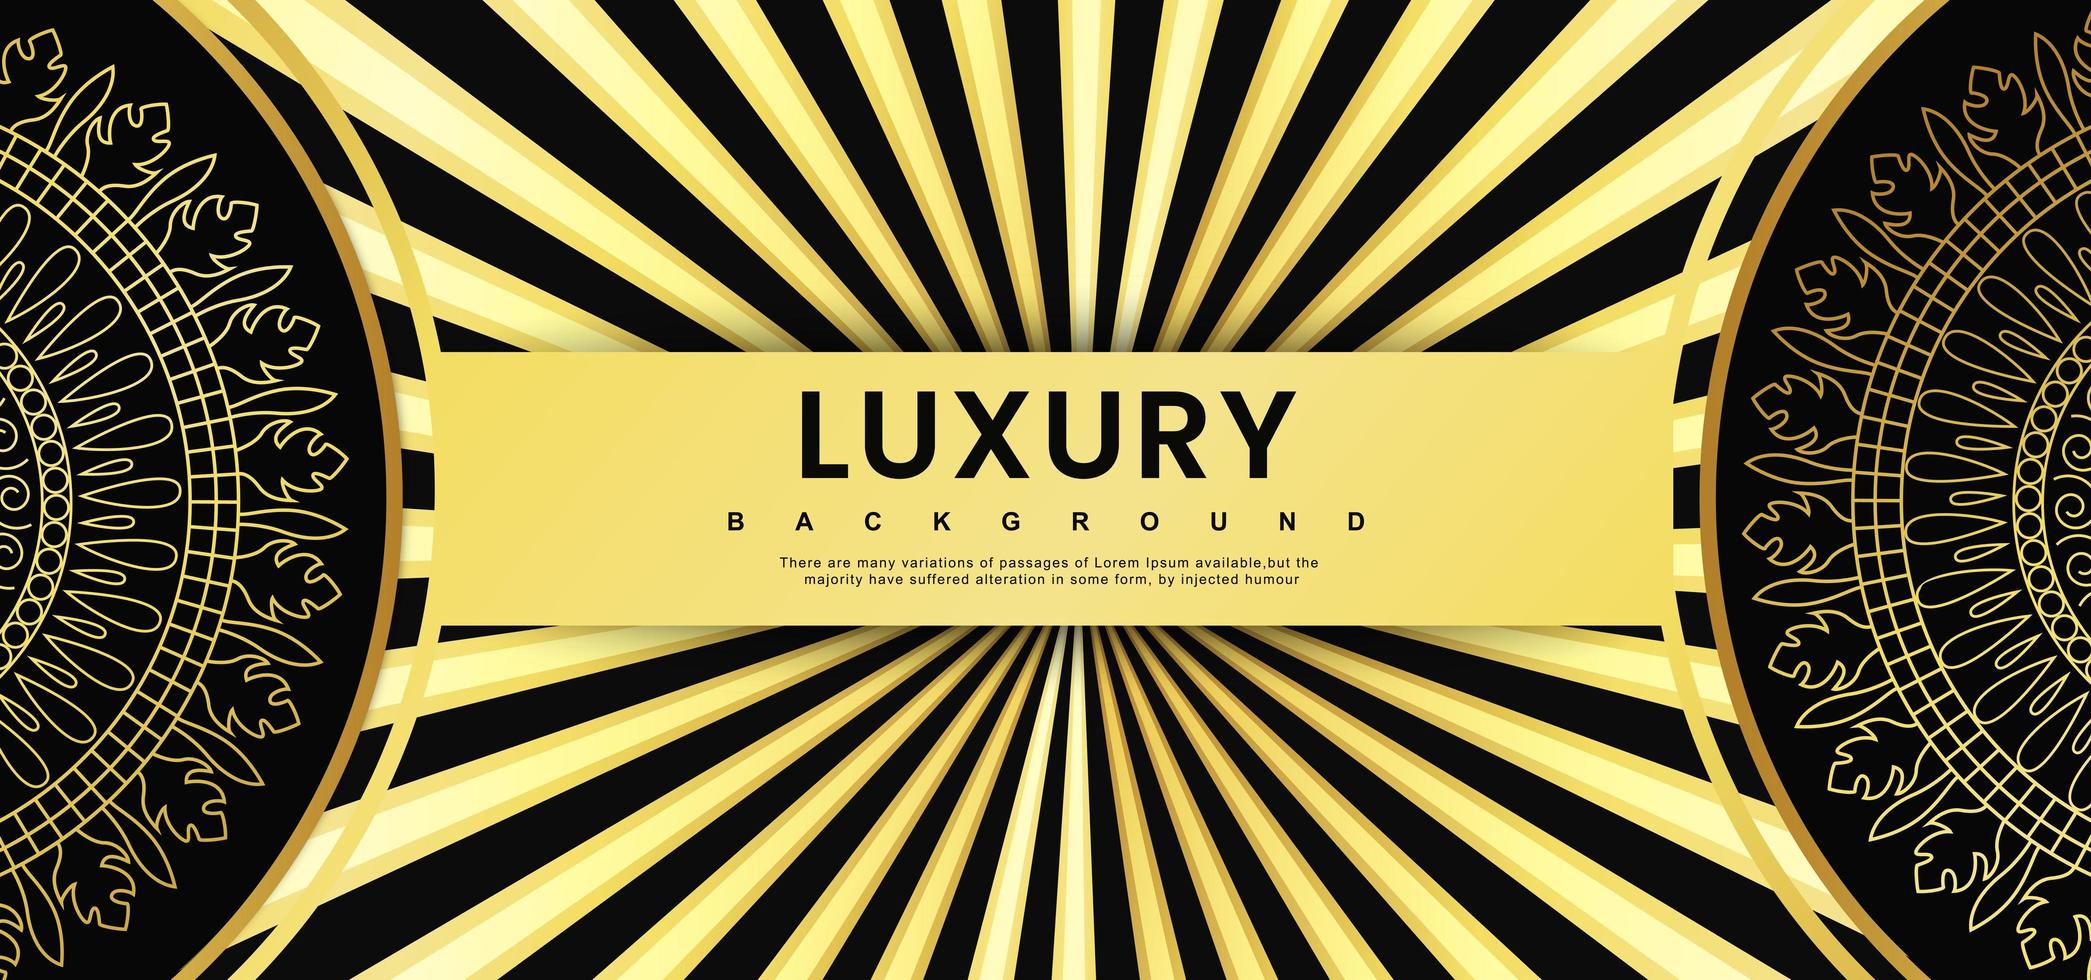 Luxury Black and Golden Sunburst Royal Banner  vector